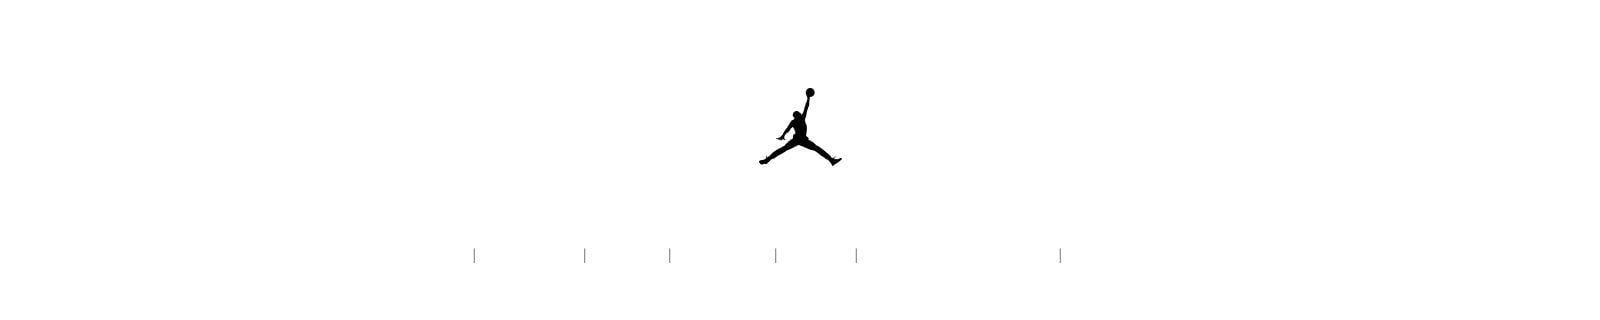 Green Jumpman Logo - Jordan Brand. Nike.com